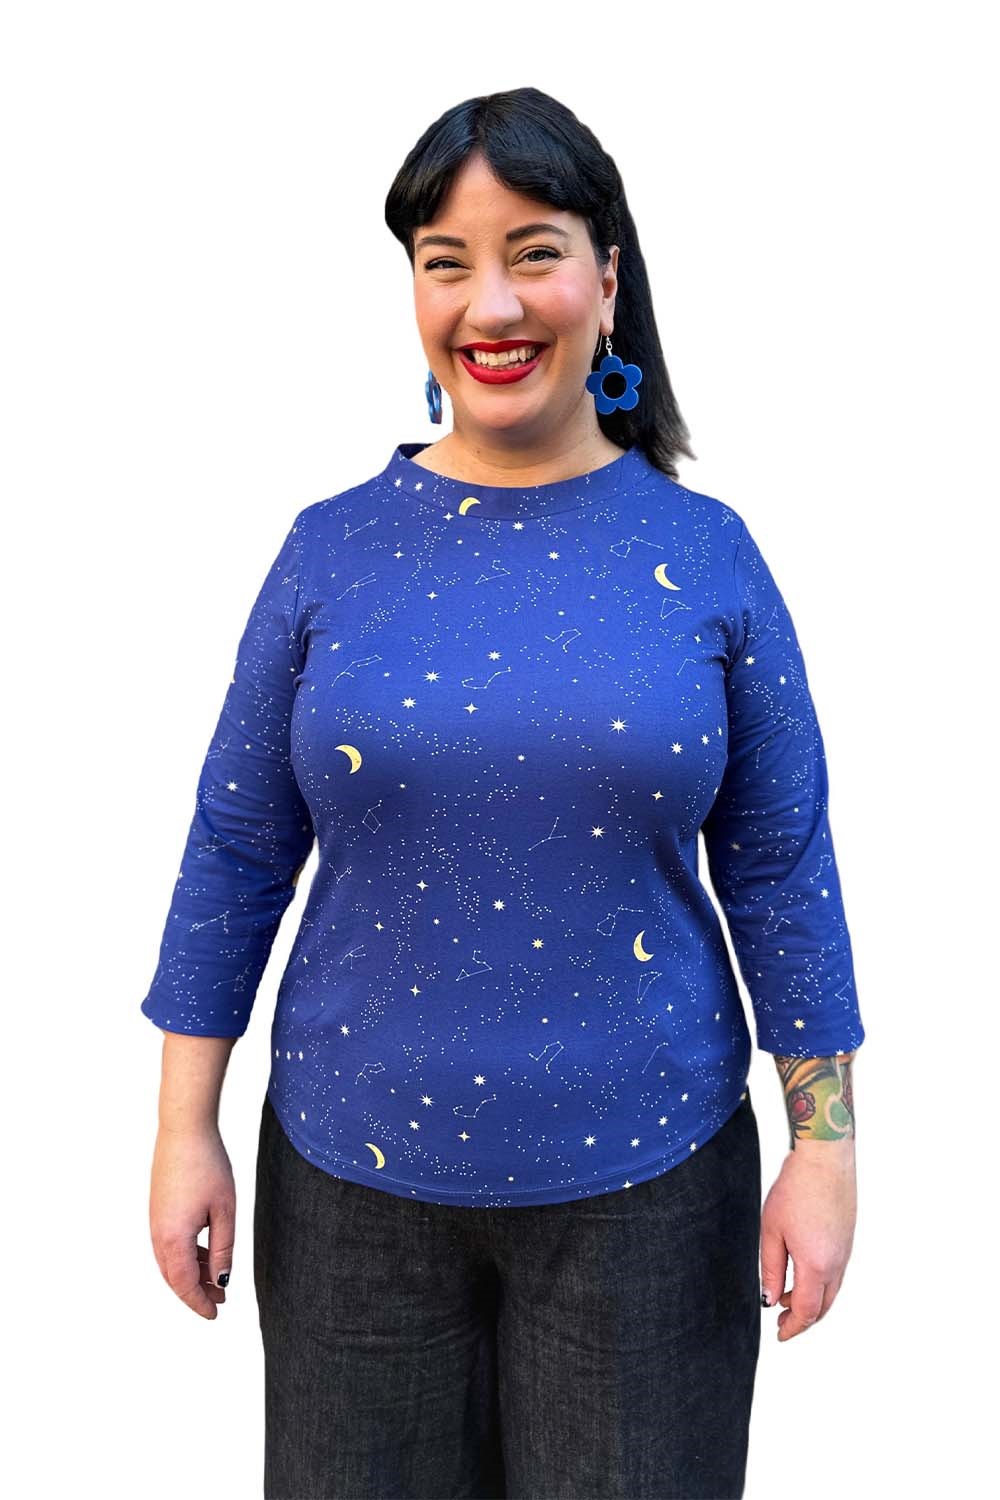 Agnes topp Astrologi blå